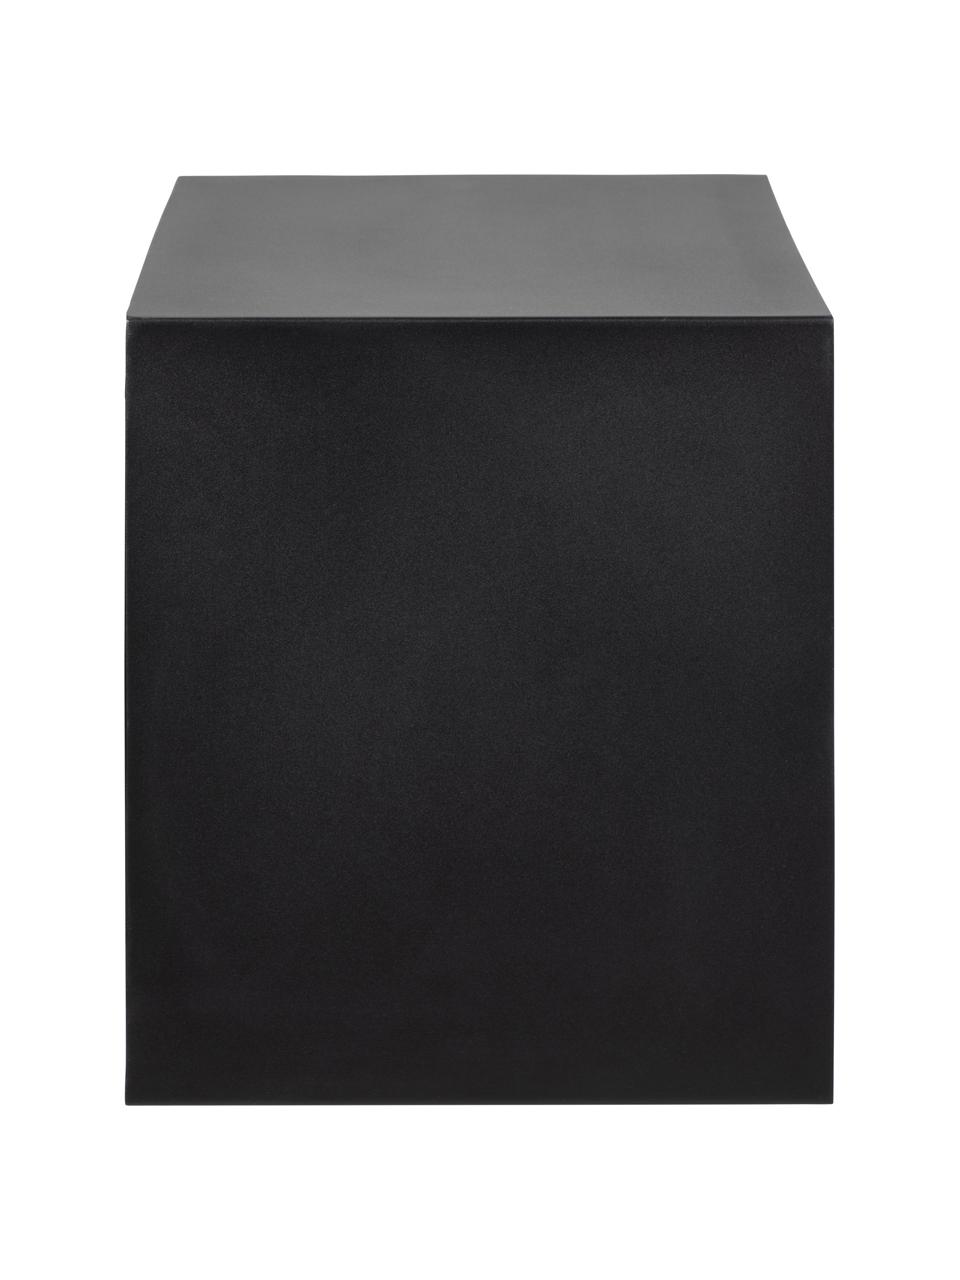 Mesita de noche de pared con cajón Joliet, Estructura: metal con pintura en polv, Negro, An 30 x Al 30 cm